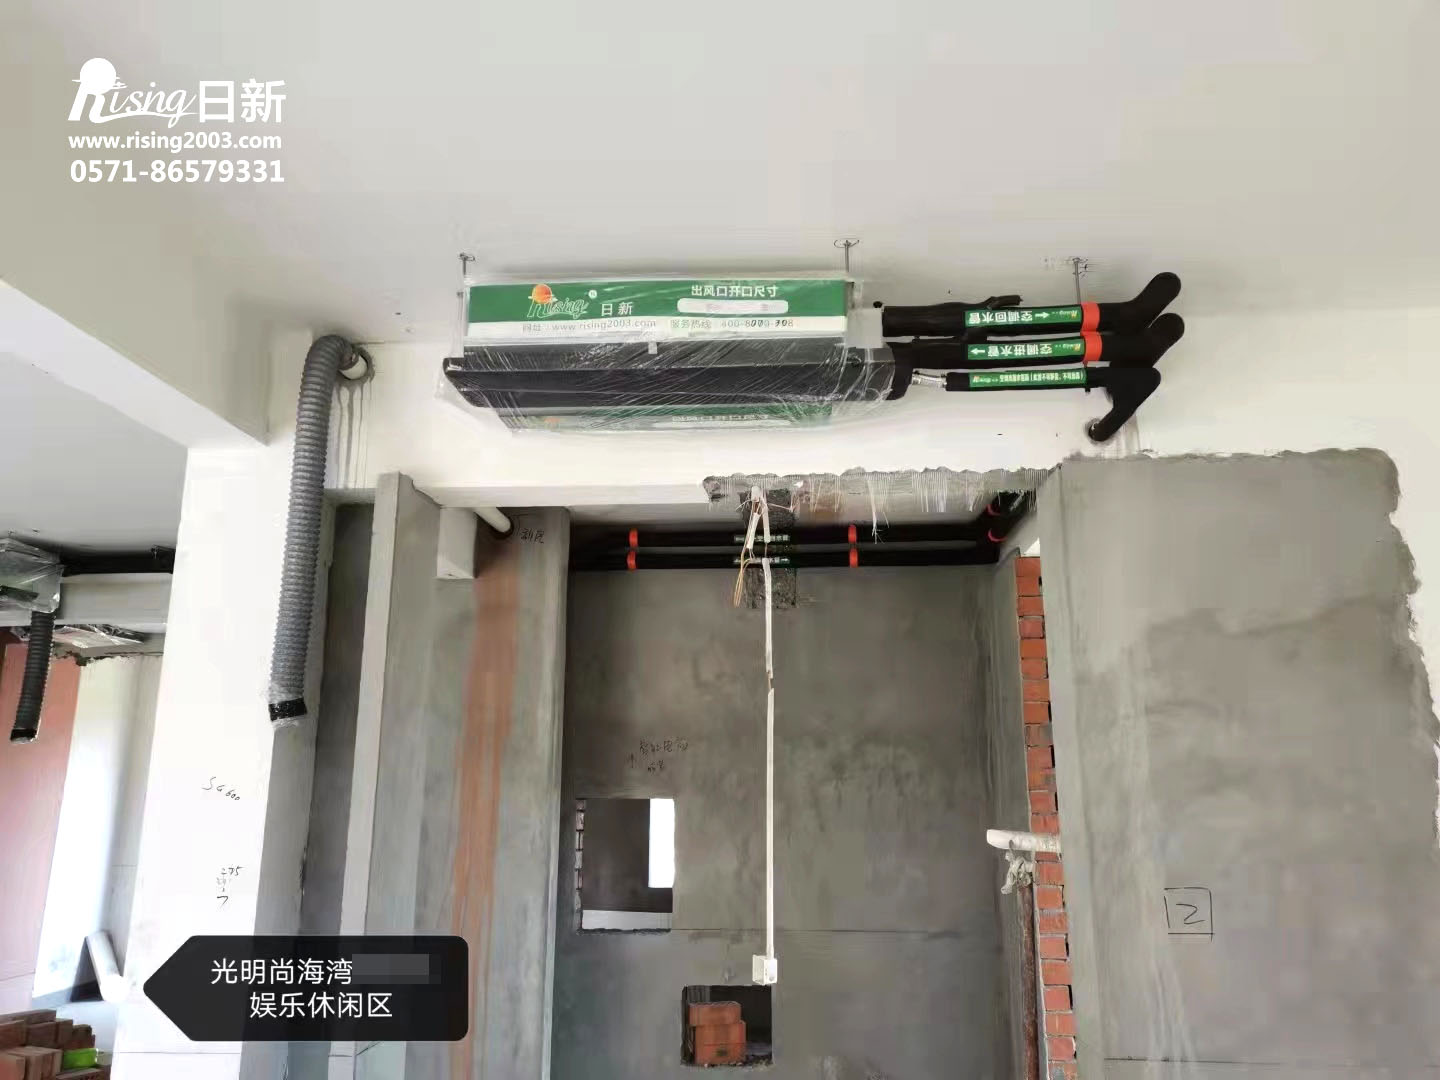 光明尚海湾别墅风冷热泵系统B项目空调阶段【日新环境】